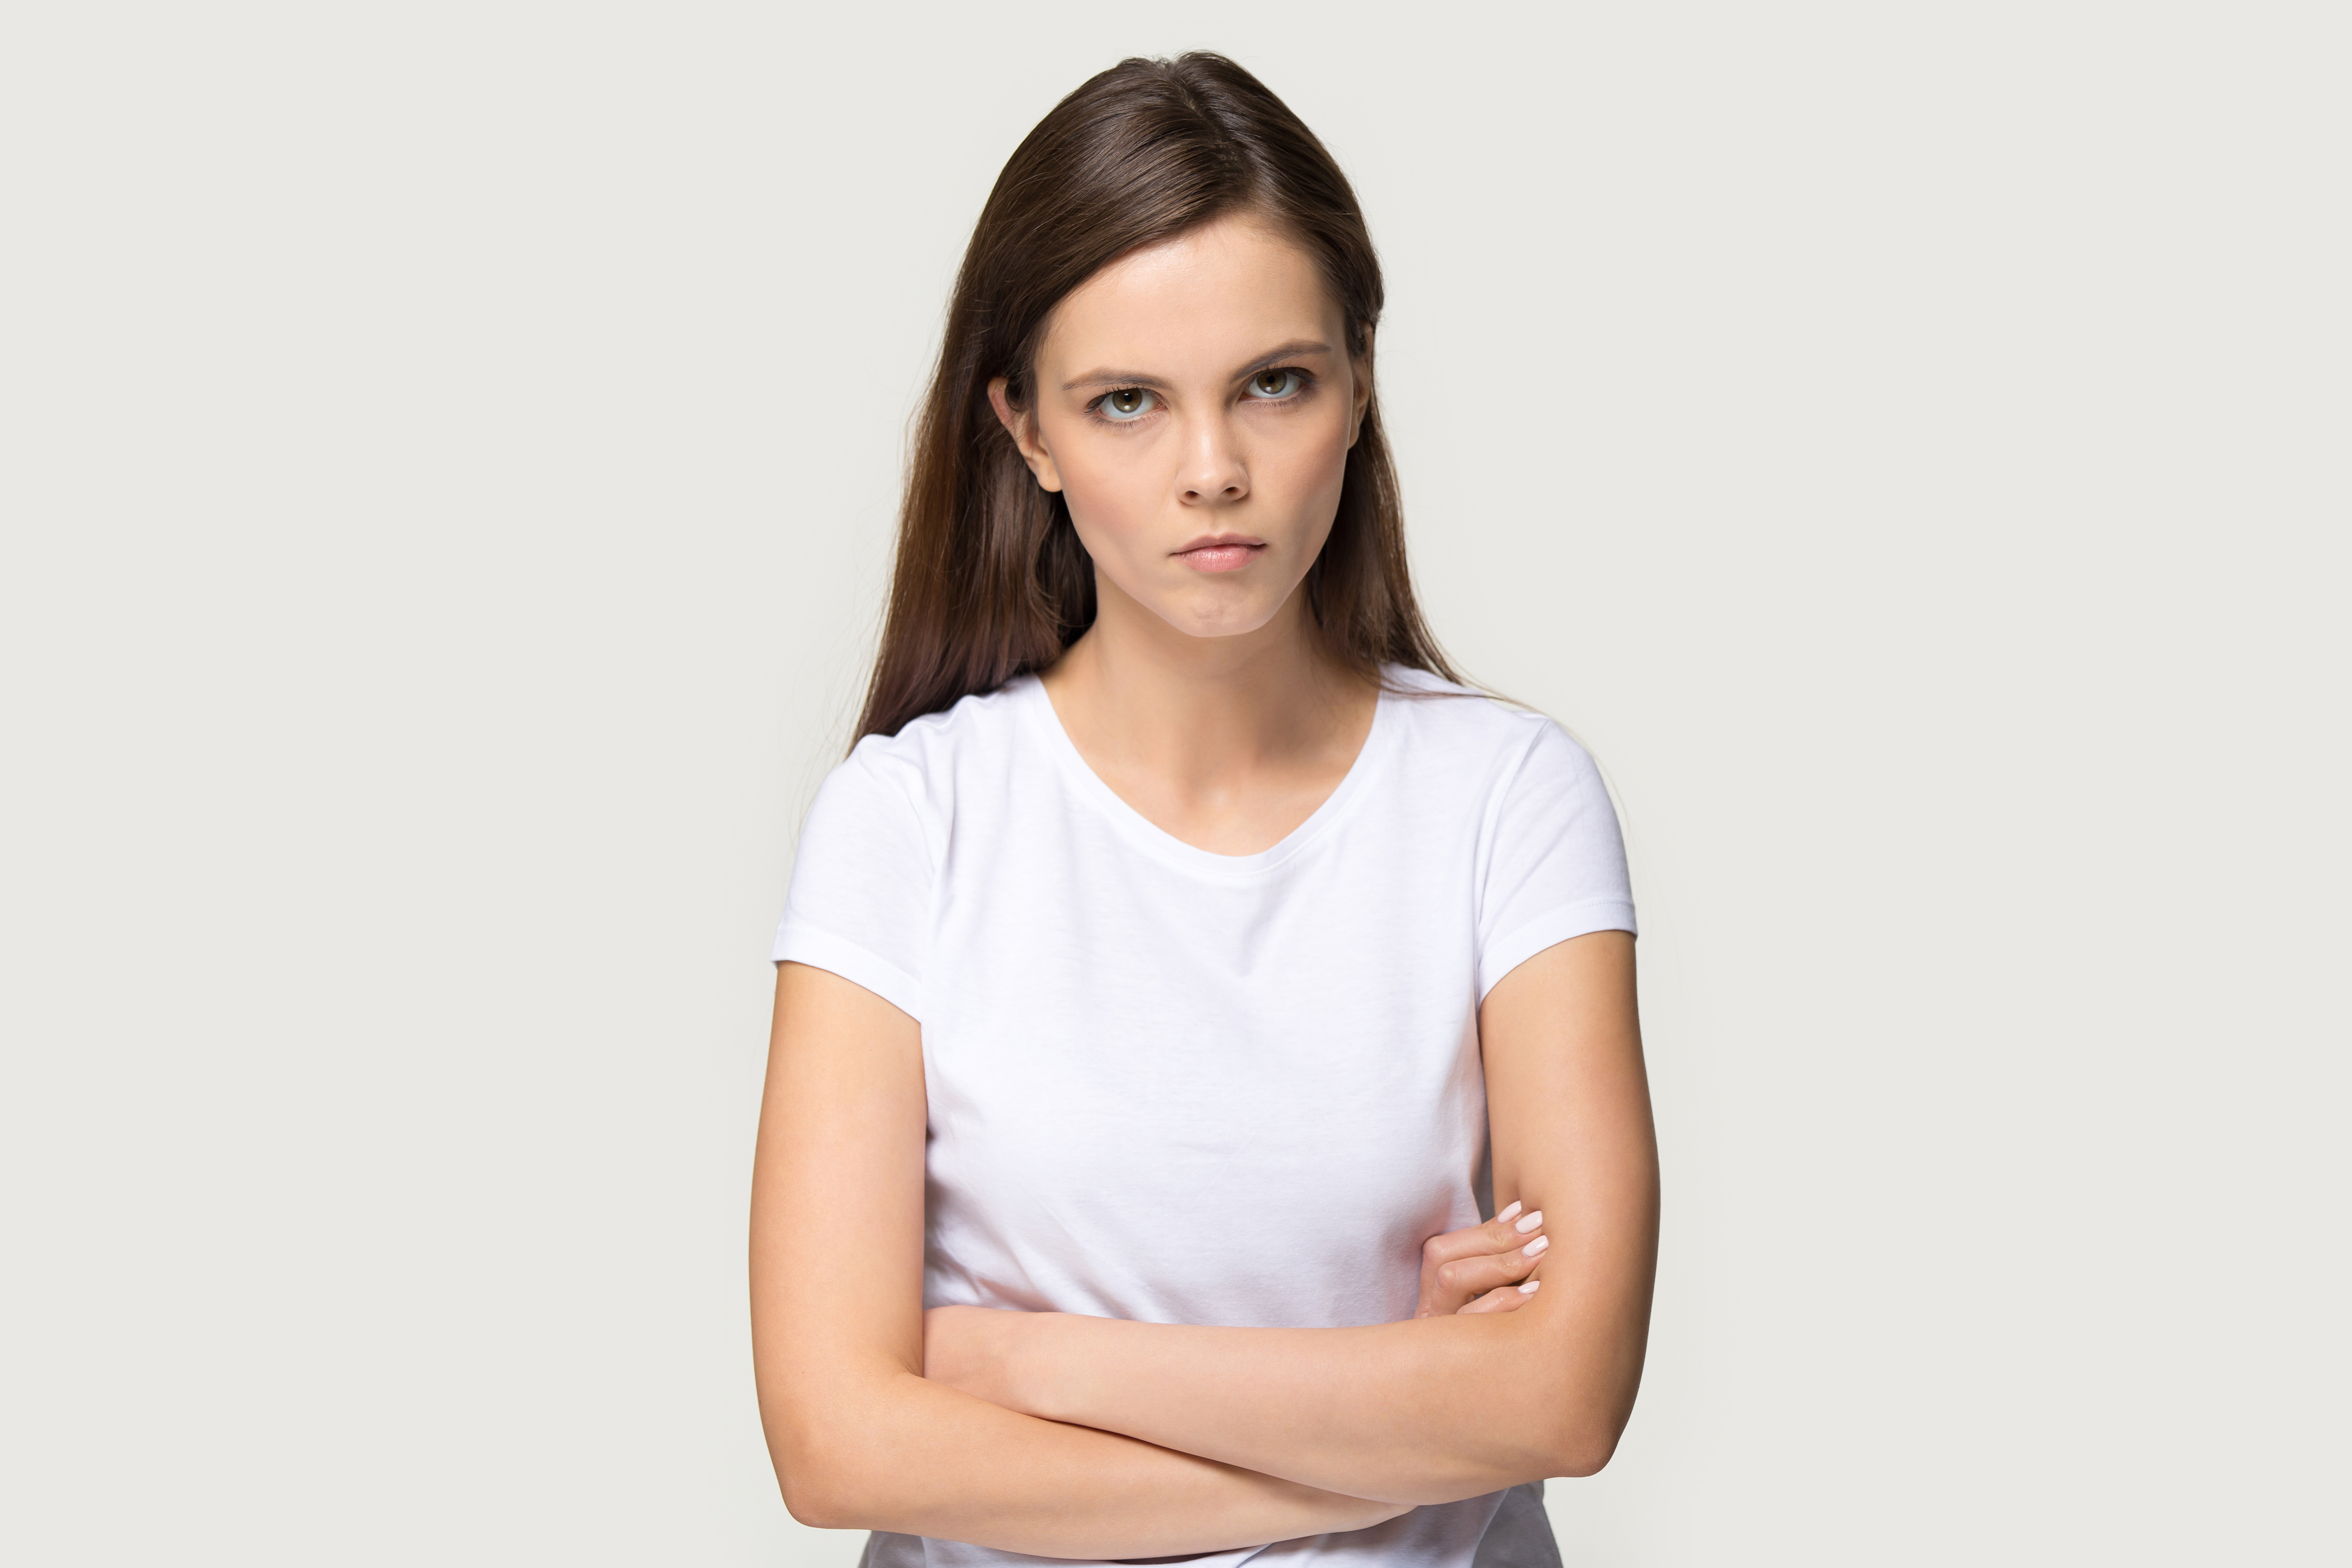 Une jeune fille à l'air contrariée | Source : Shutterstock